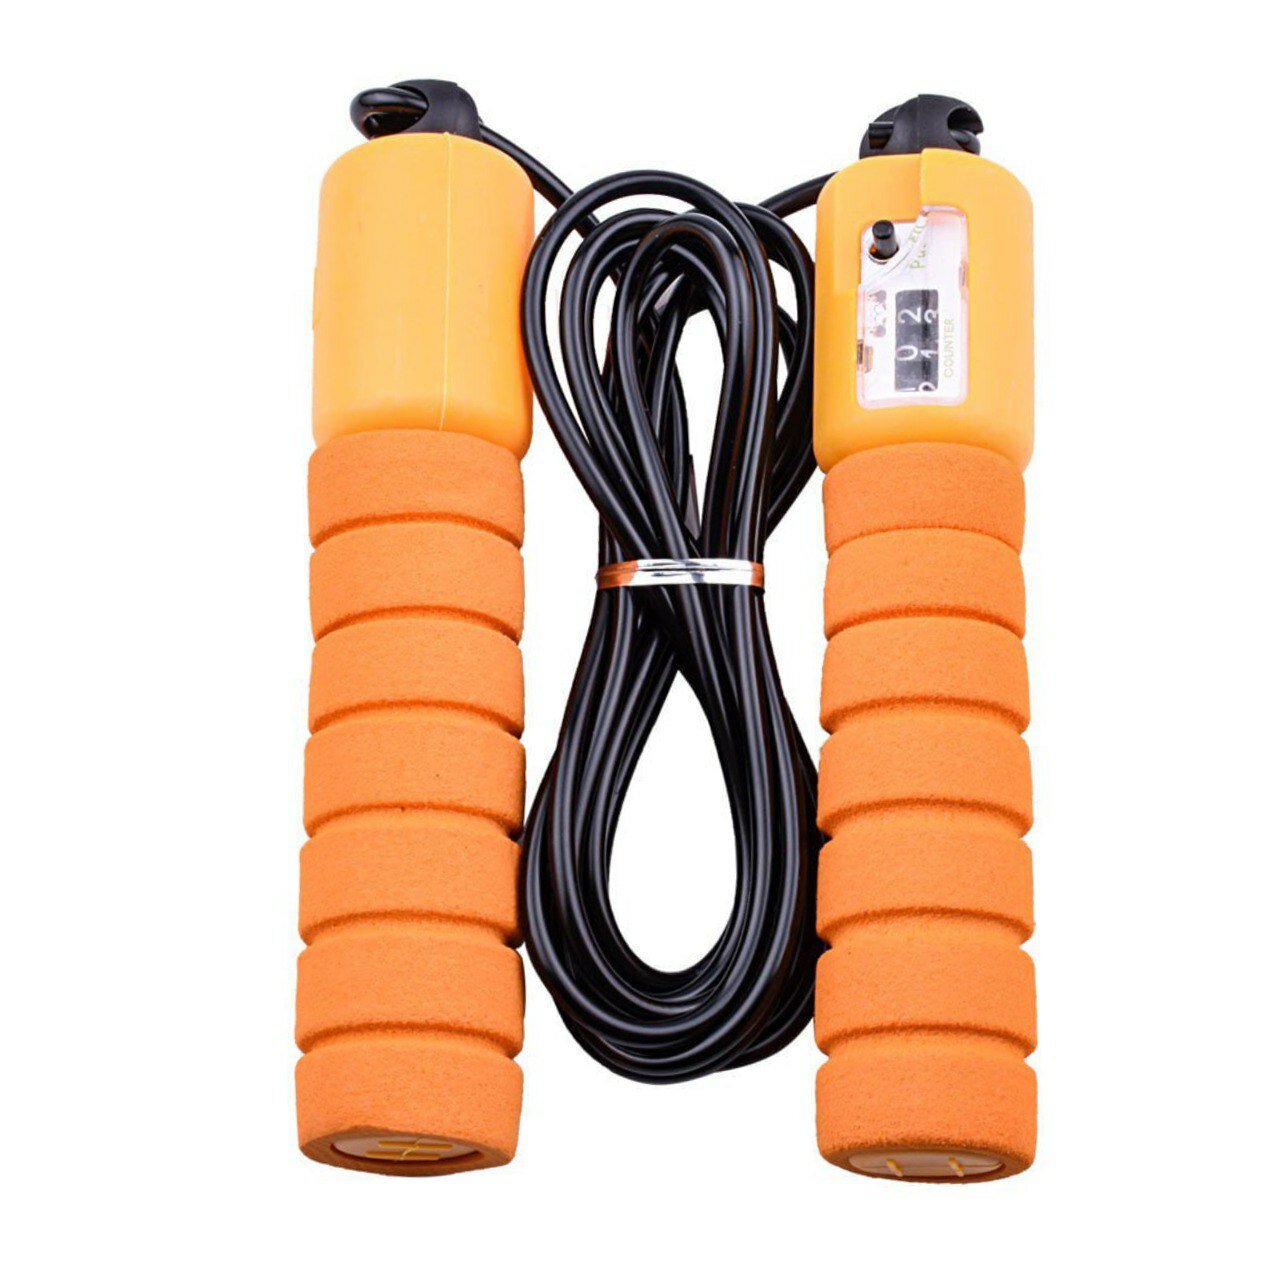 Скакалка UNIX Fit для фитнеса с механическим счетчиком прыжков, спортивная профессиональная скакалка, резиновая, 287 см, оранжевая UNIXFIT